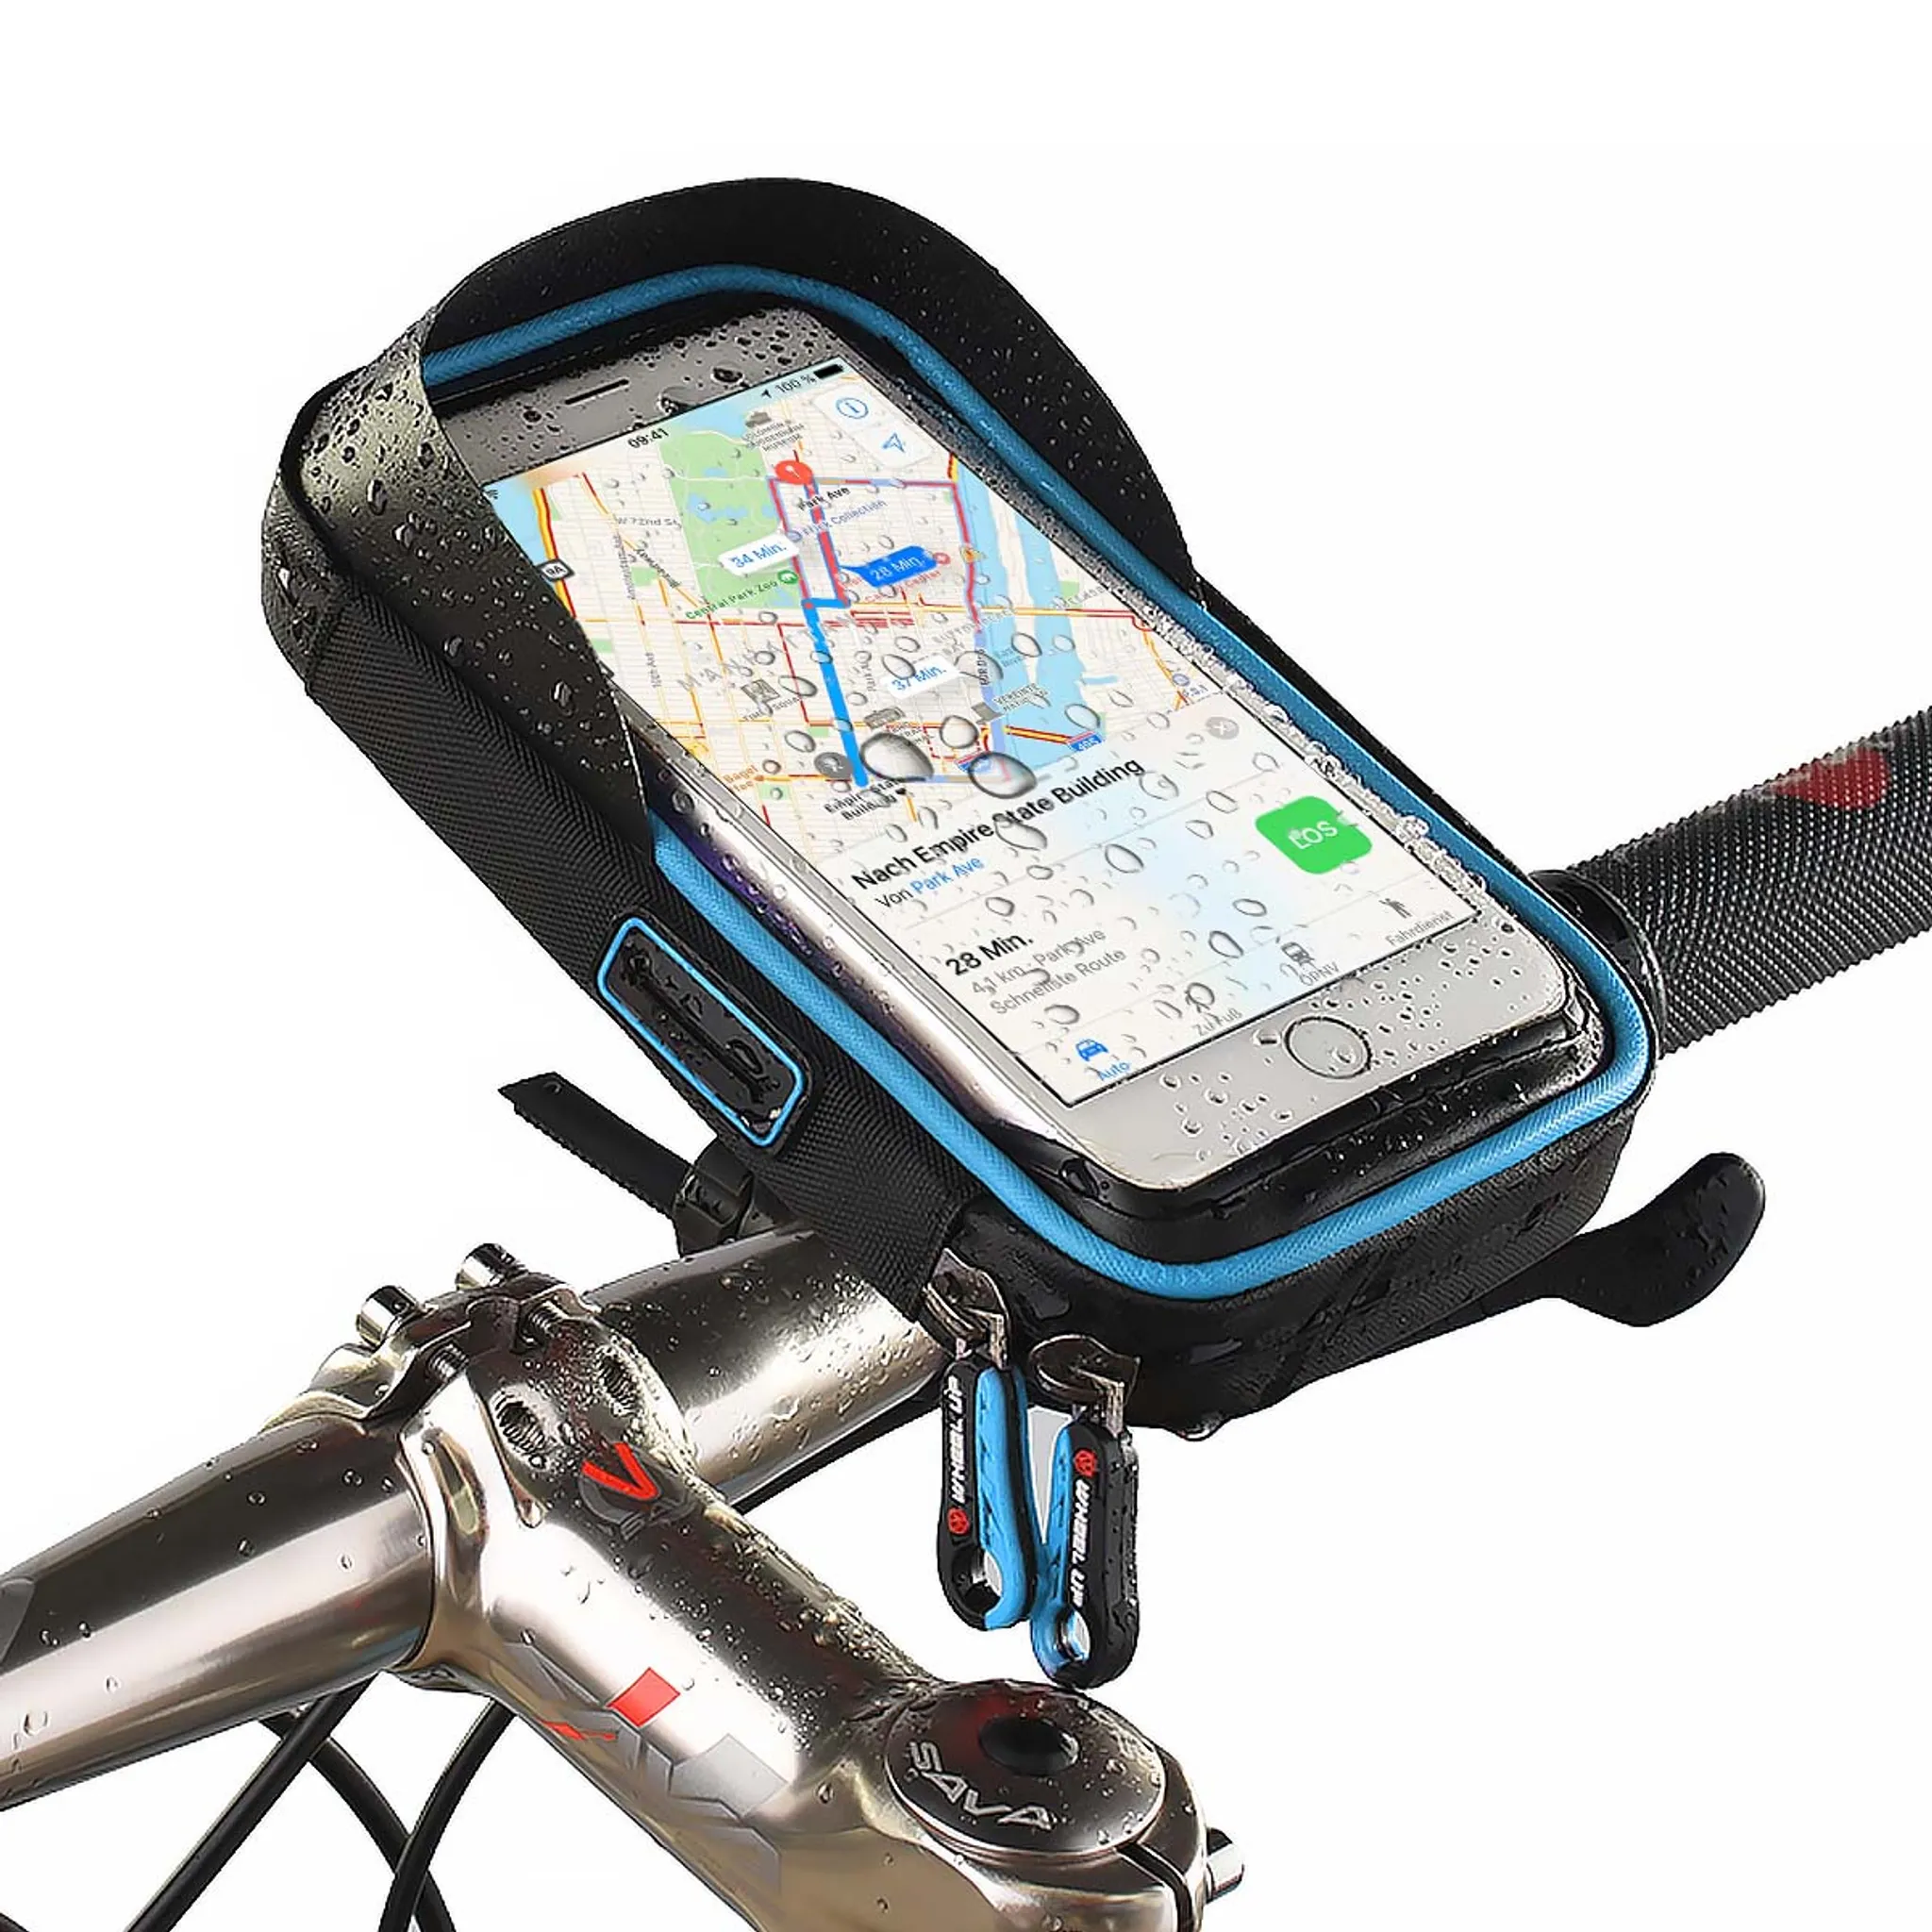 Stabile Halterung für eine Taschenlampe an Fahrrad oder Roller